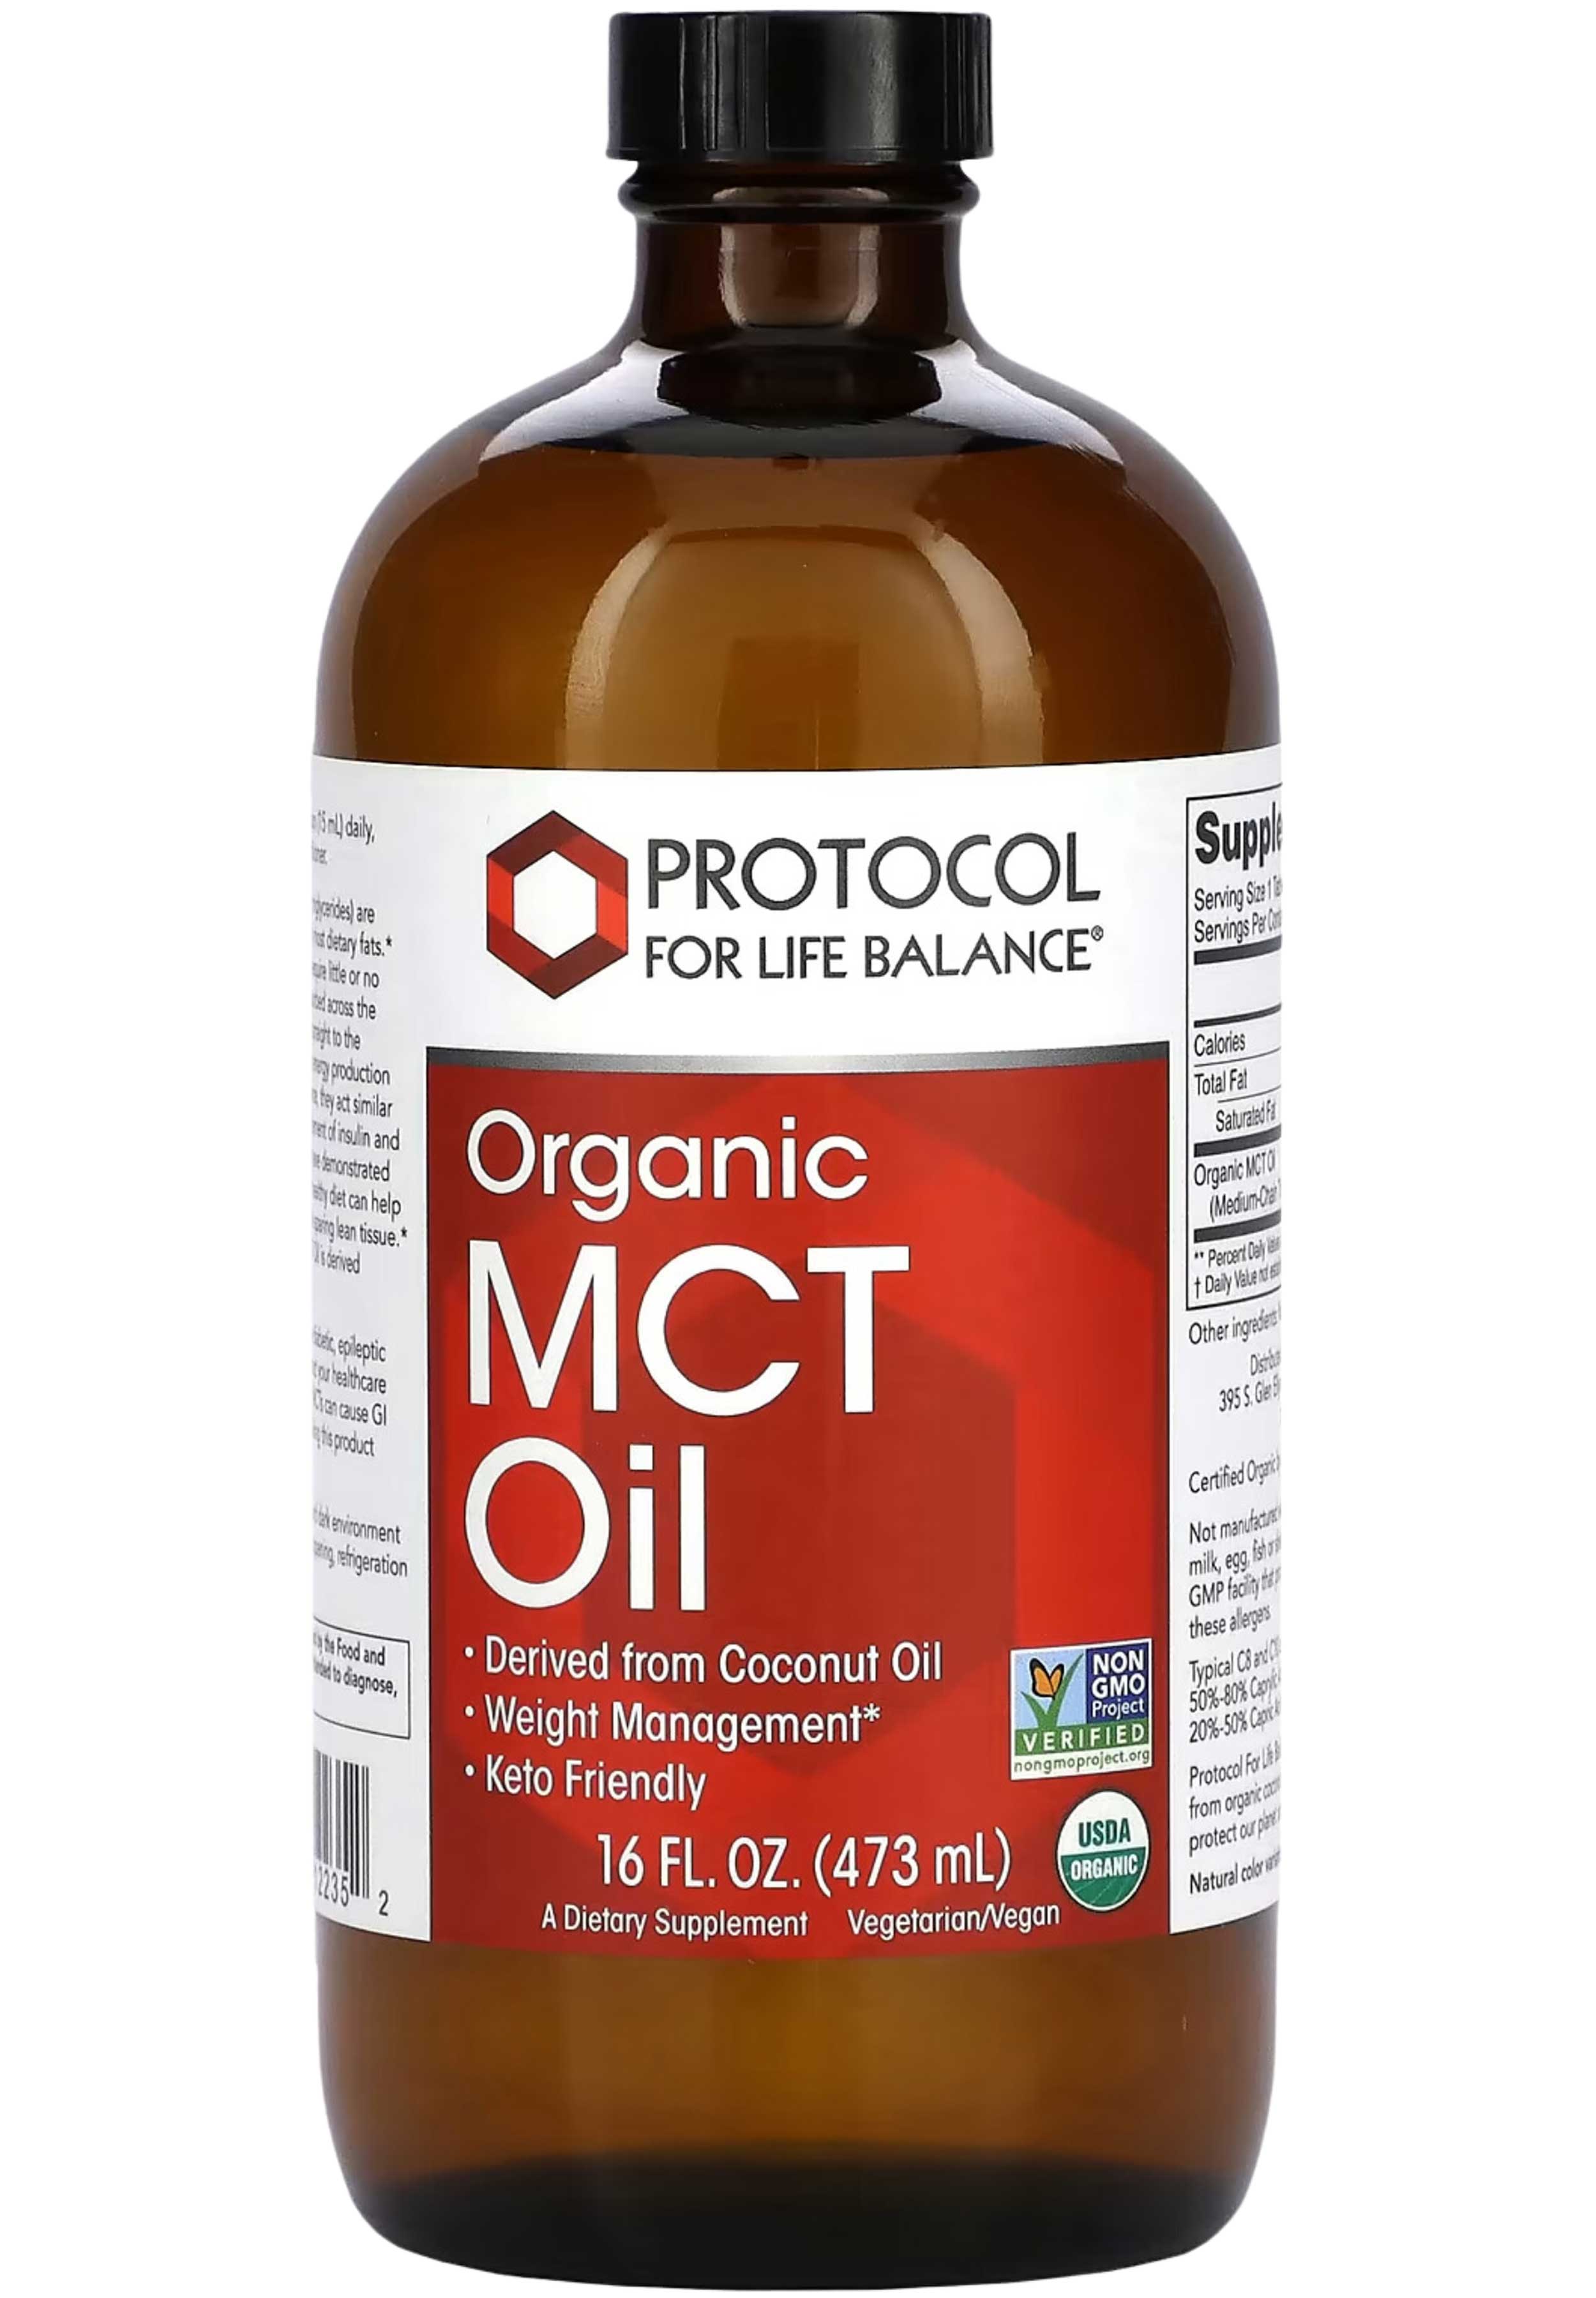 Protocol for Life Balance Organic MCT Oil